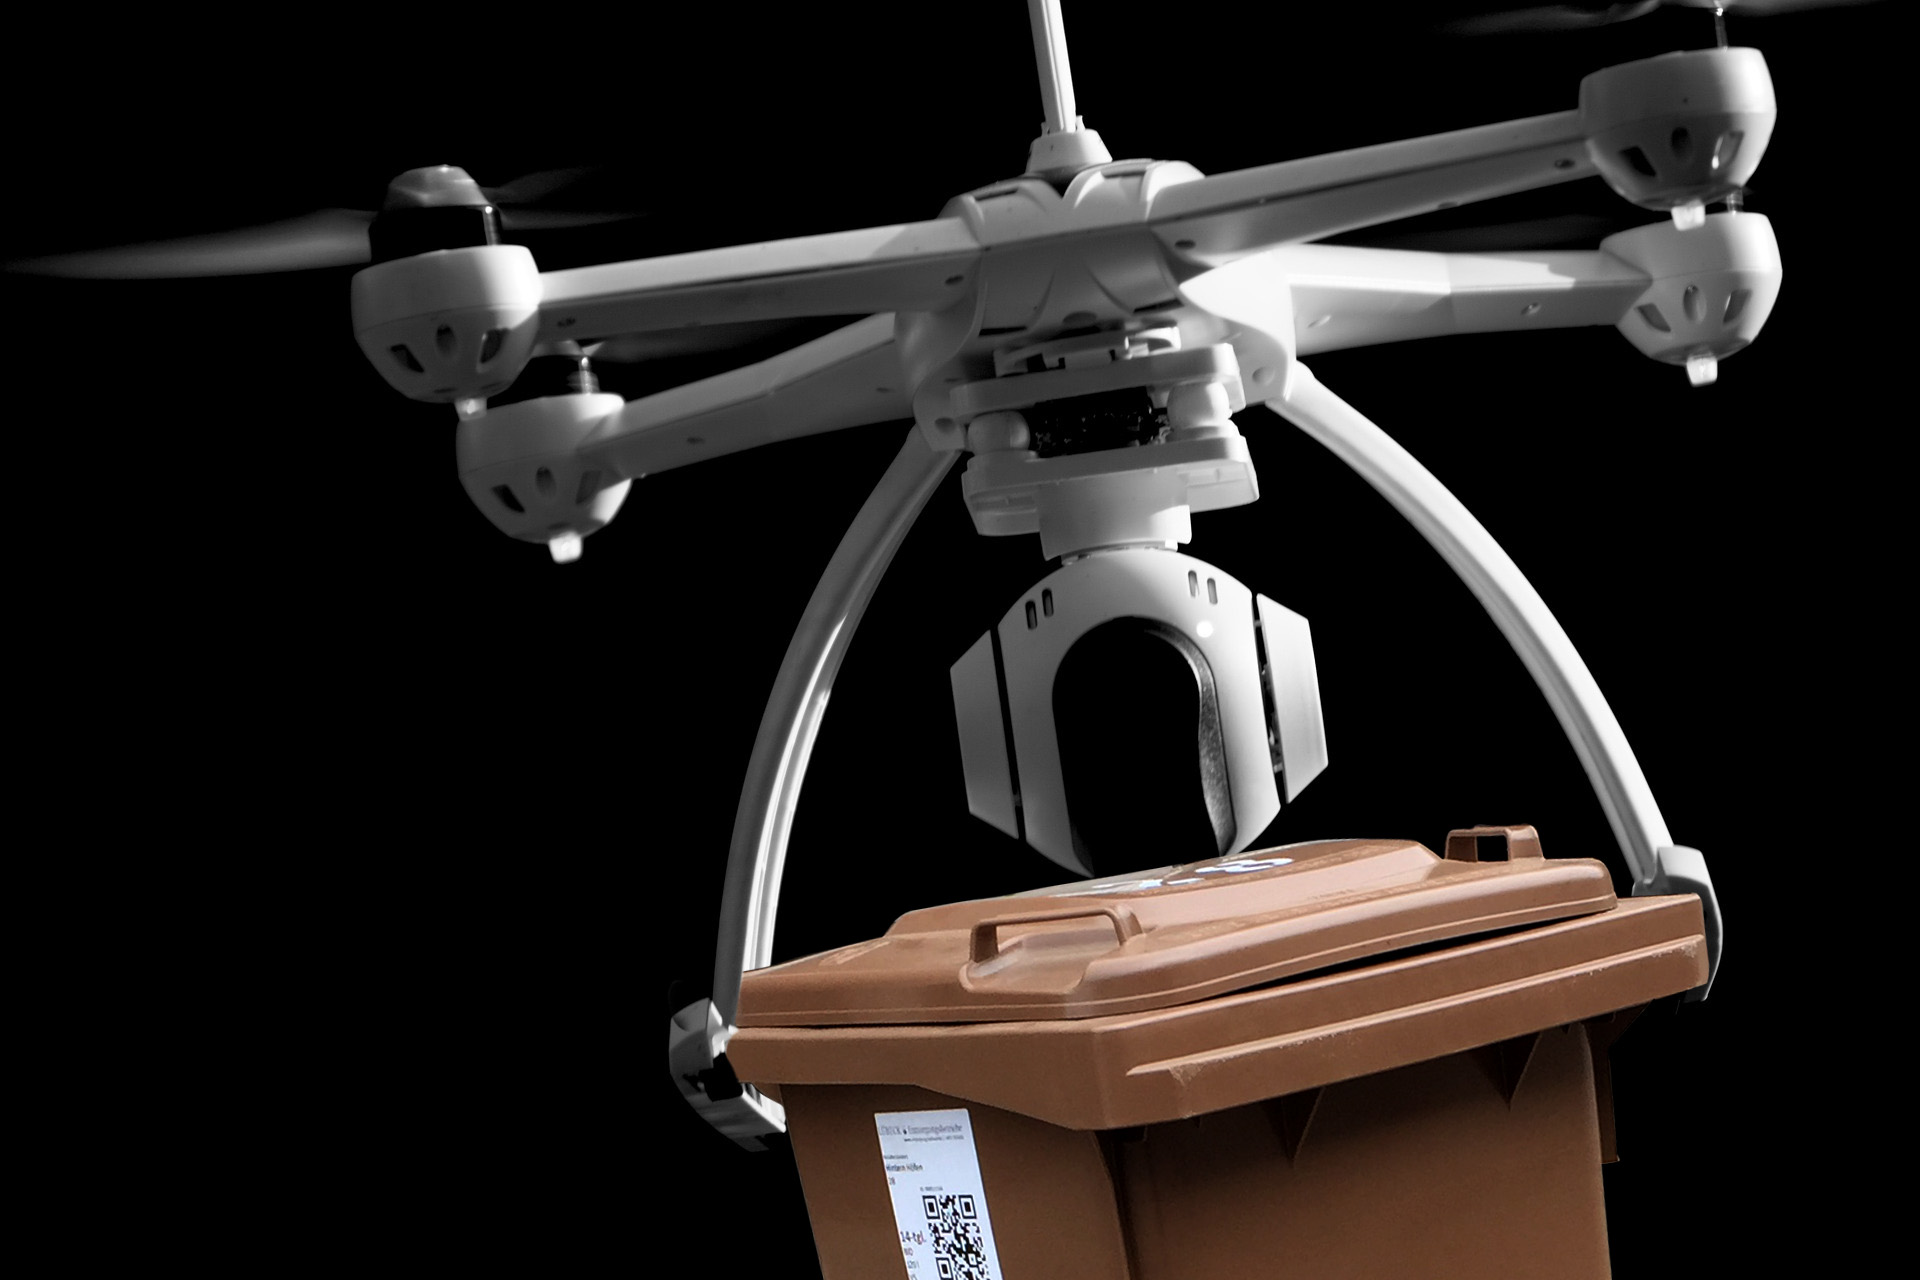 Abfallbehälter werden in Lübeck bald mit Drohnen abgeholt